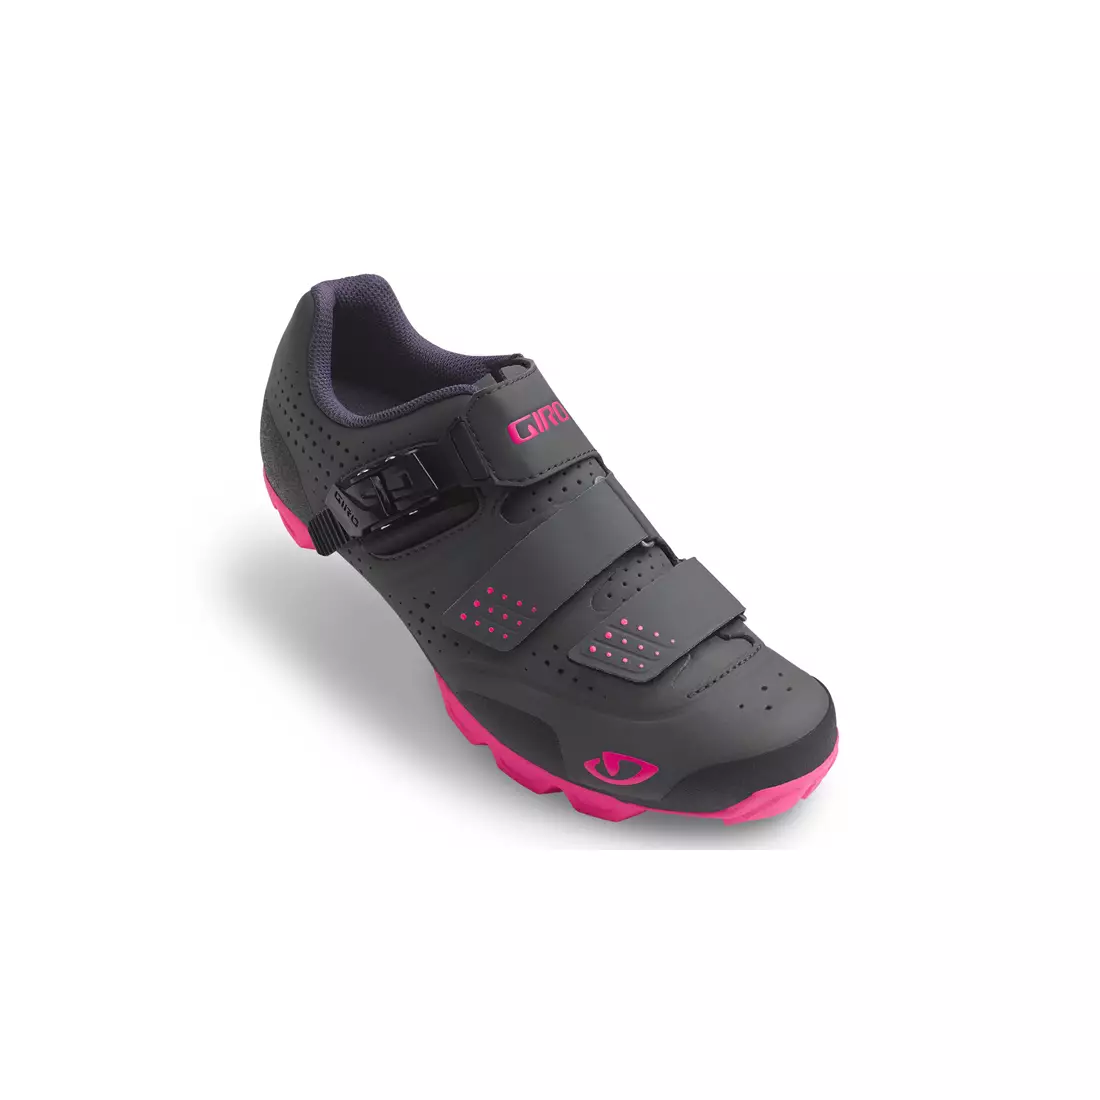 Dámska cyklistická obuv MTB GIRO MANTA R dark shadow bright pink 